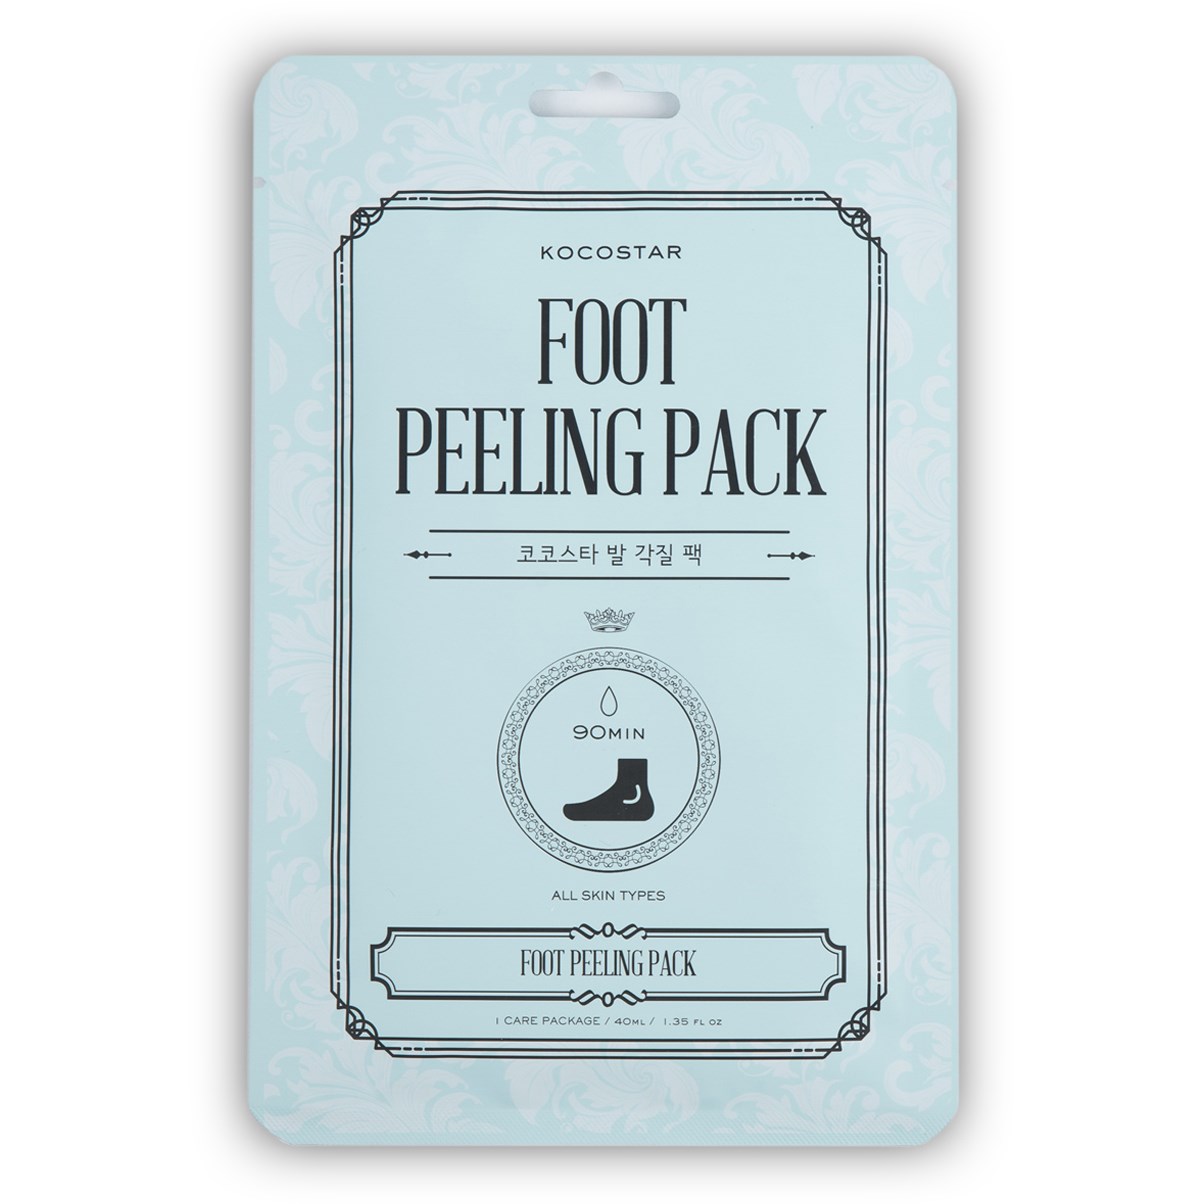 KOCOSTAR Foot Peeling Pack 40 ml